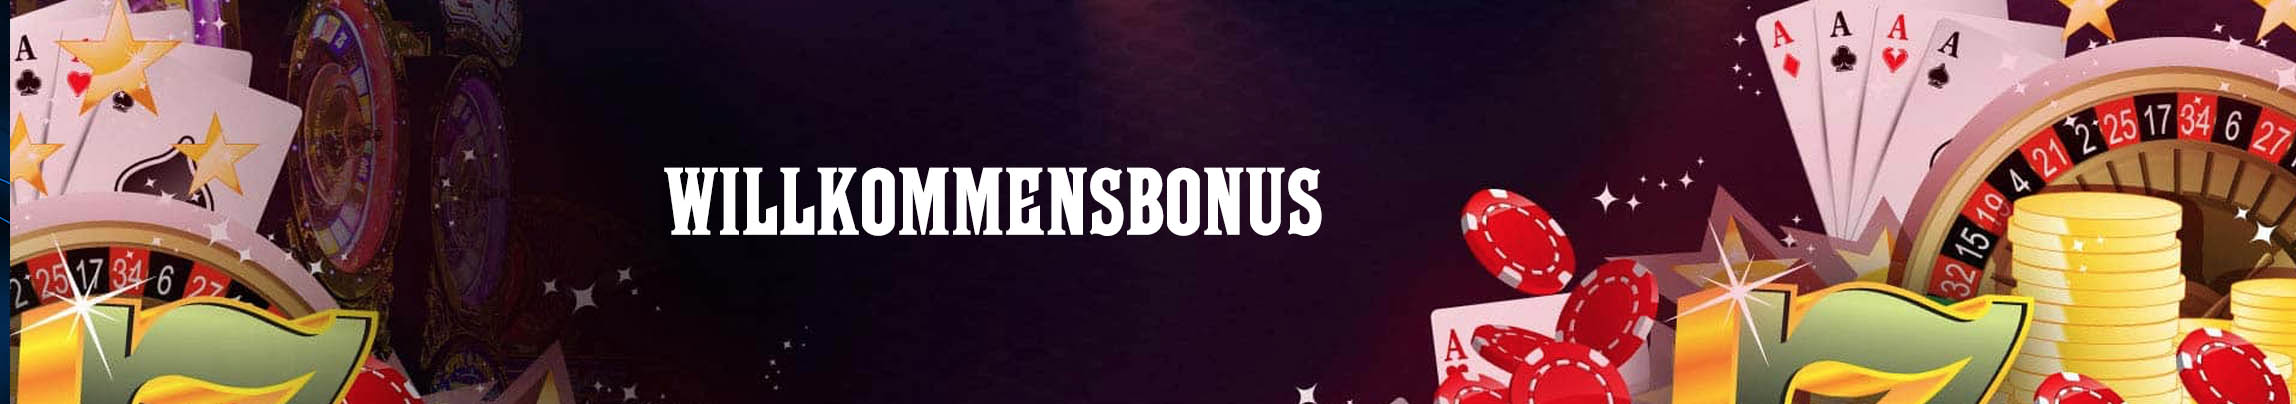 willkommensbonus logo